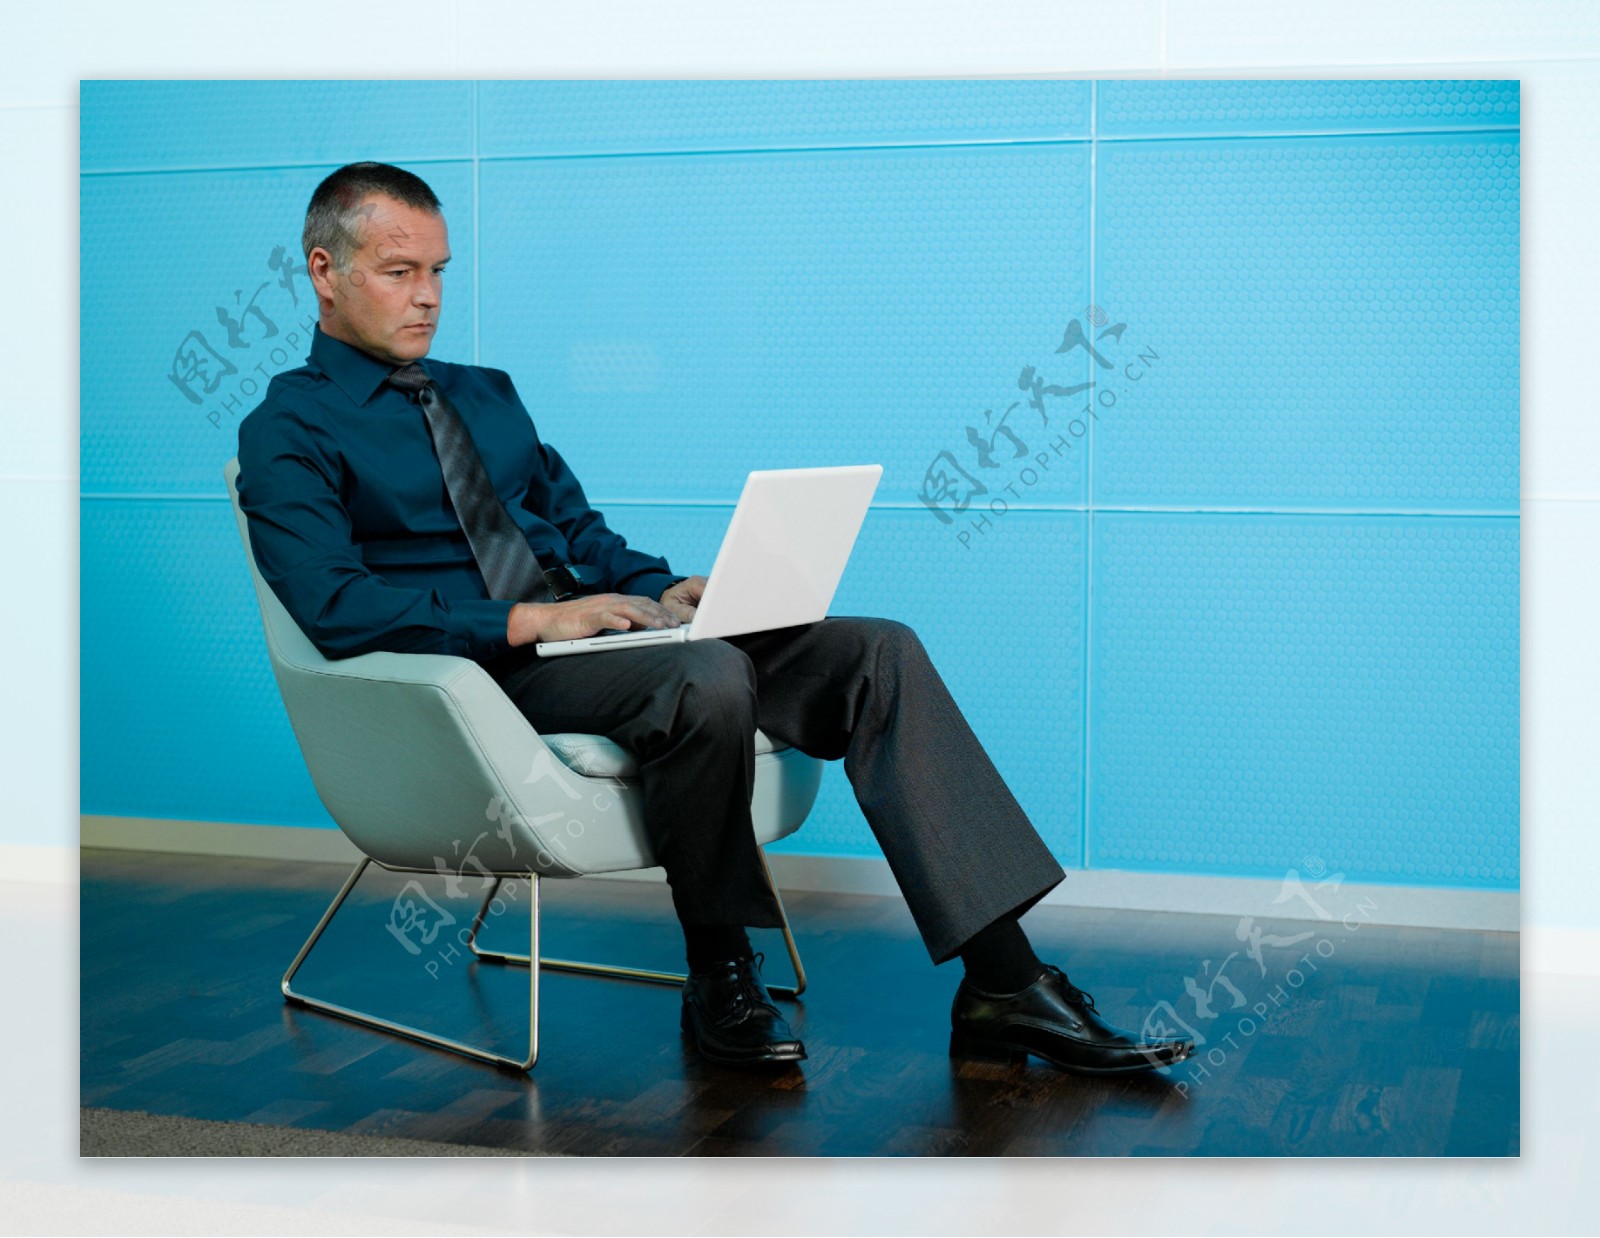 坐在椅子上玩电脑的男人图片